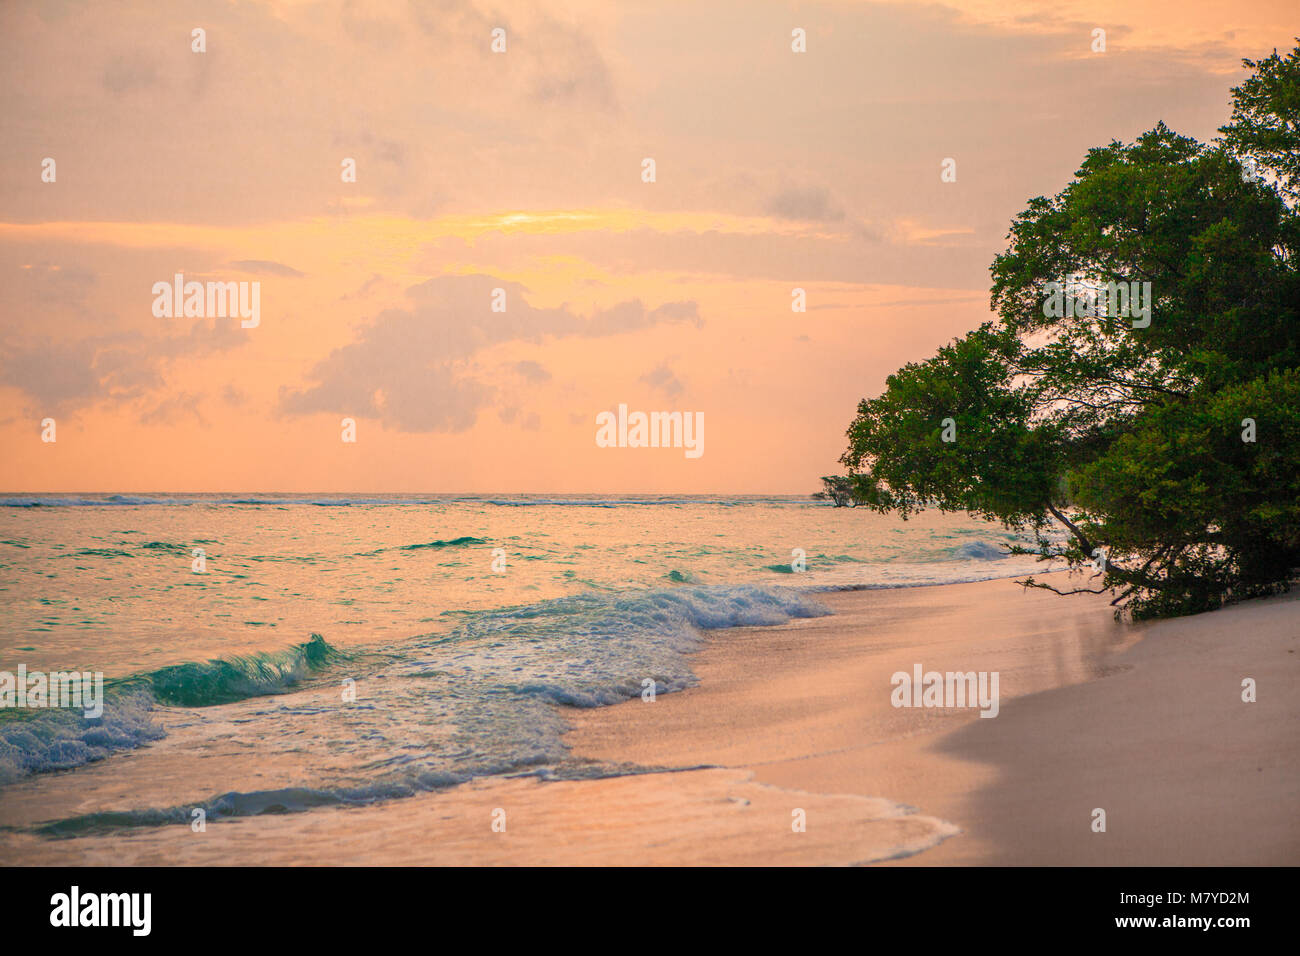 Himmlische Strand menschenleer, mit türkisblauem Wasser und rosa gelb Himmel bei Sonnenuntergang, mit Bäumen auf dem Sand in der Nähe des Meeres Stockfoto